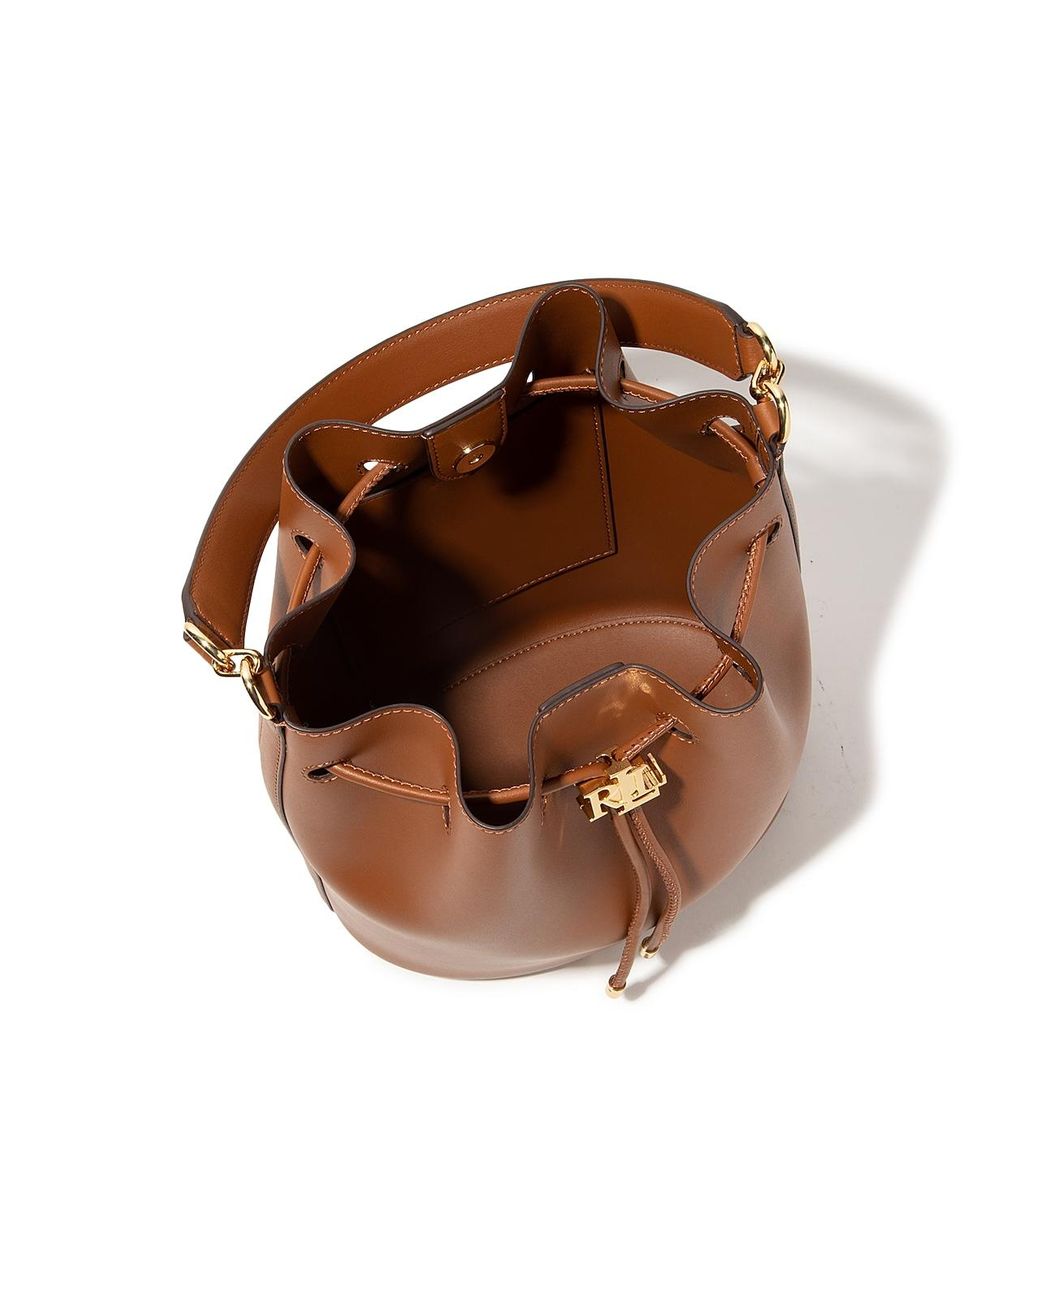 Andie large bucket bag in leather, brown, Lauren Ralph Lauren